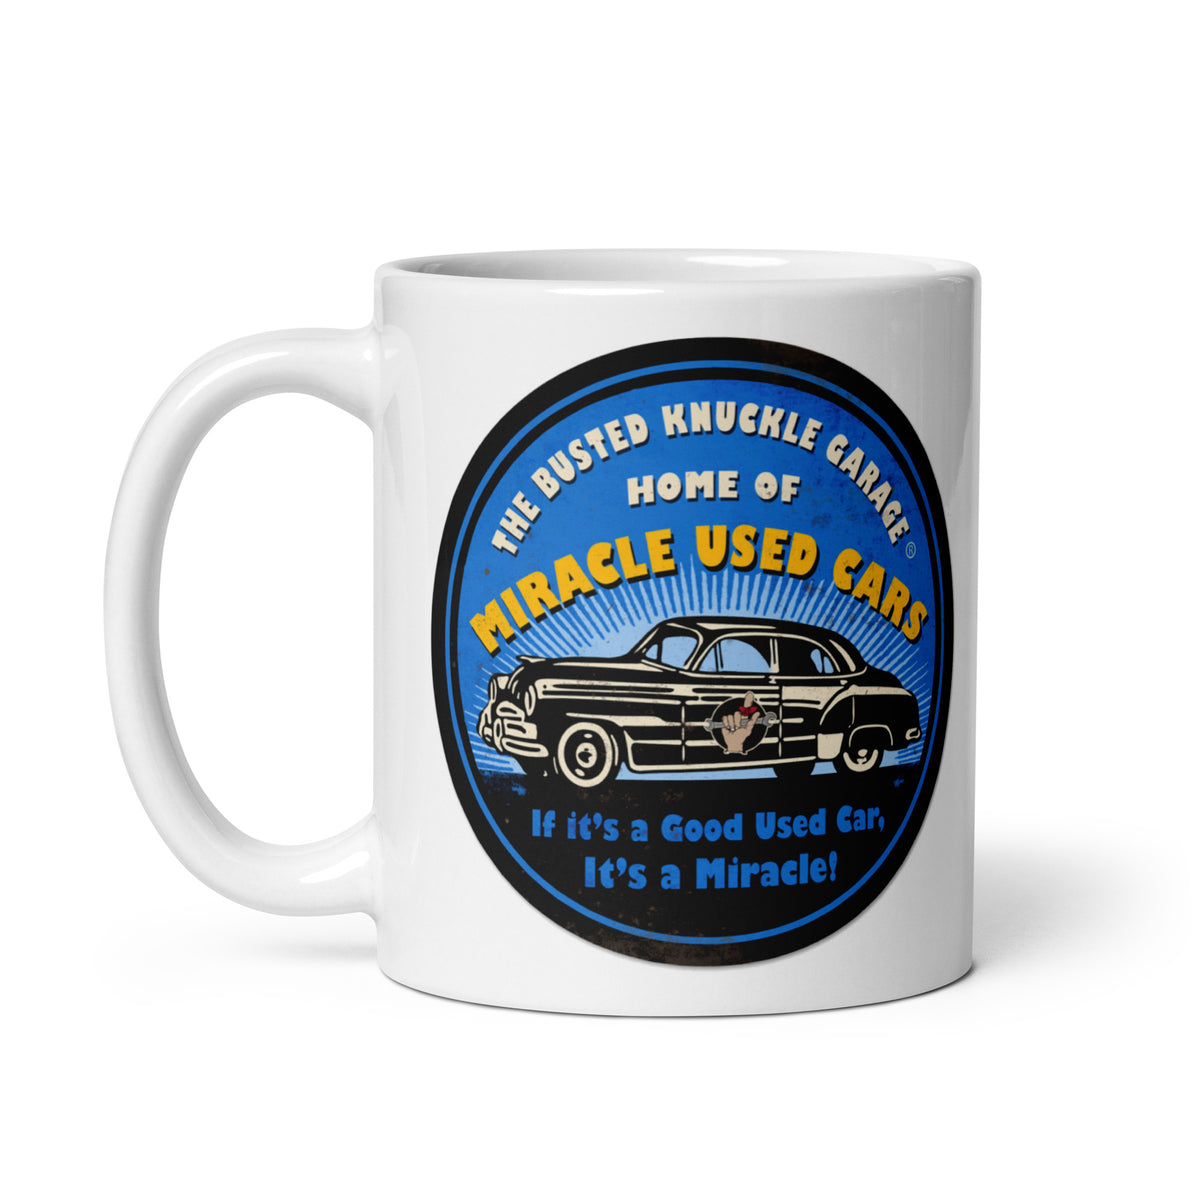 Busted Knuckle Garage Used Cars Coffee Mug